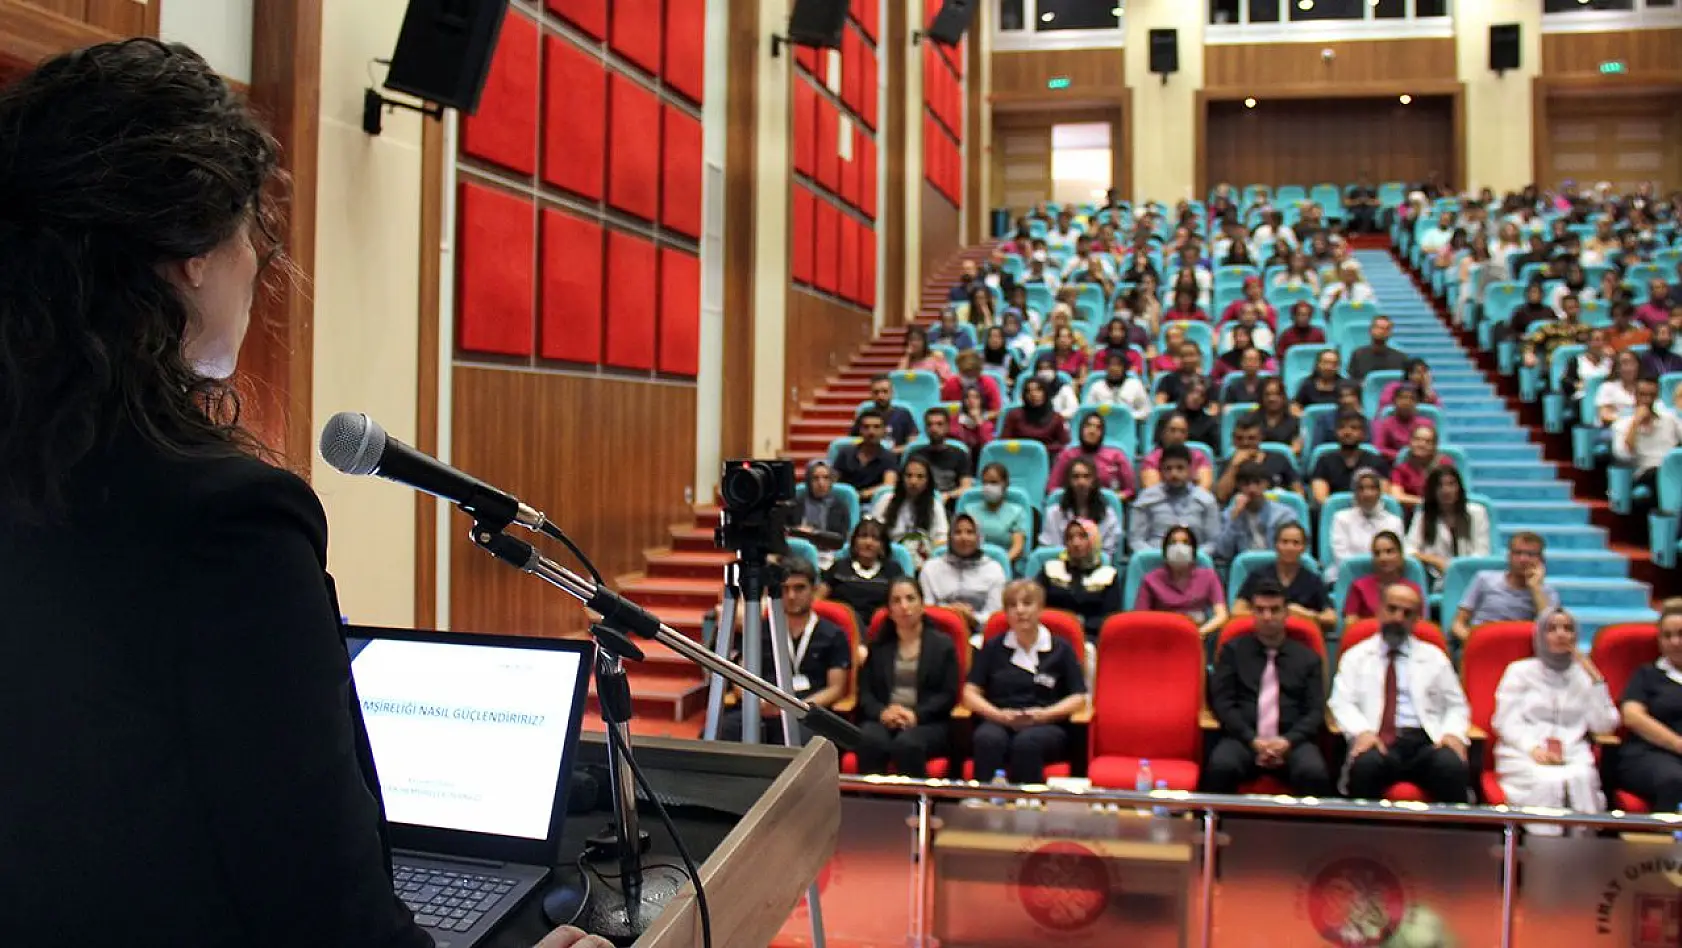 'Hemşirelikte Güçlendirme' Konulu Konferans Verildi